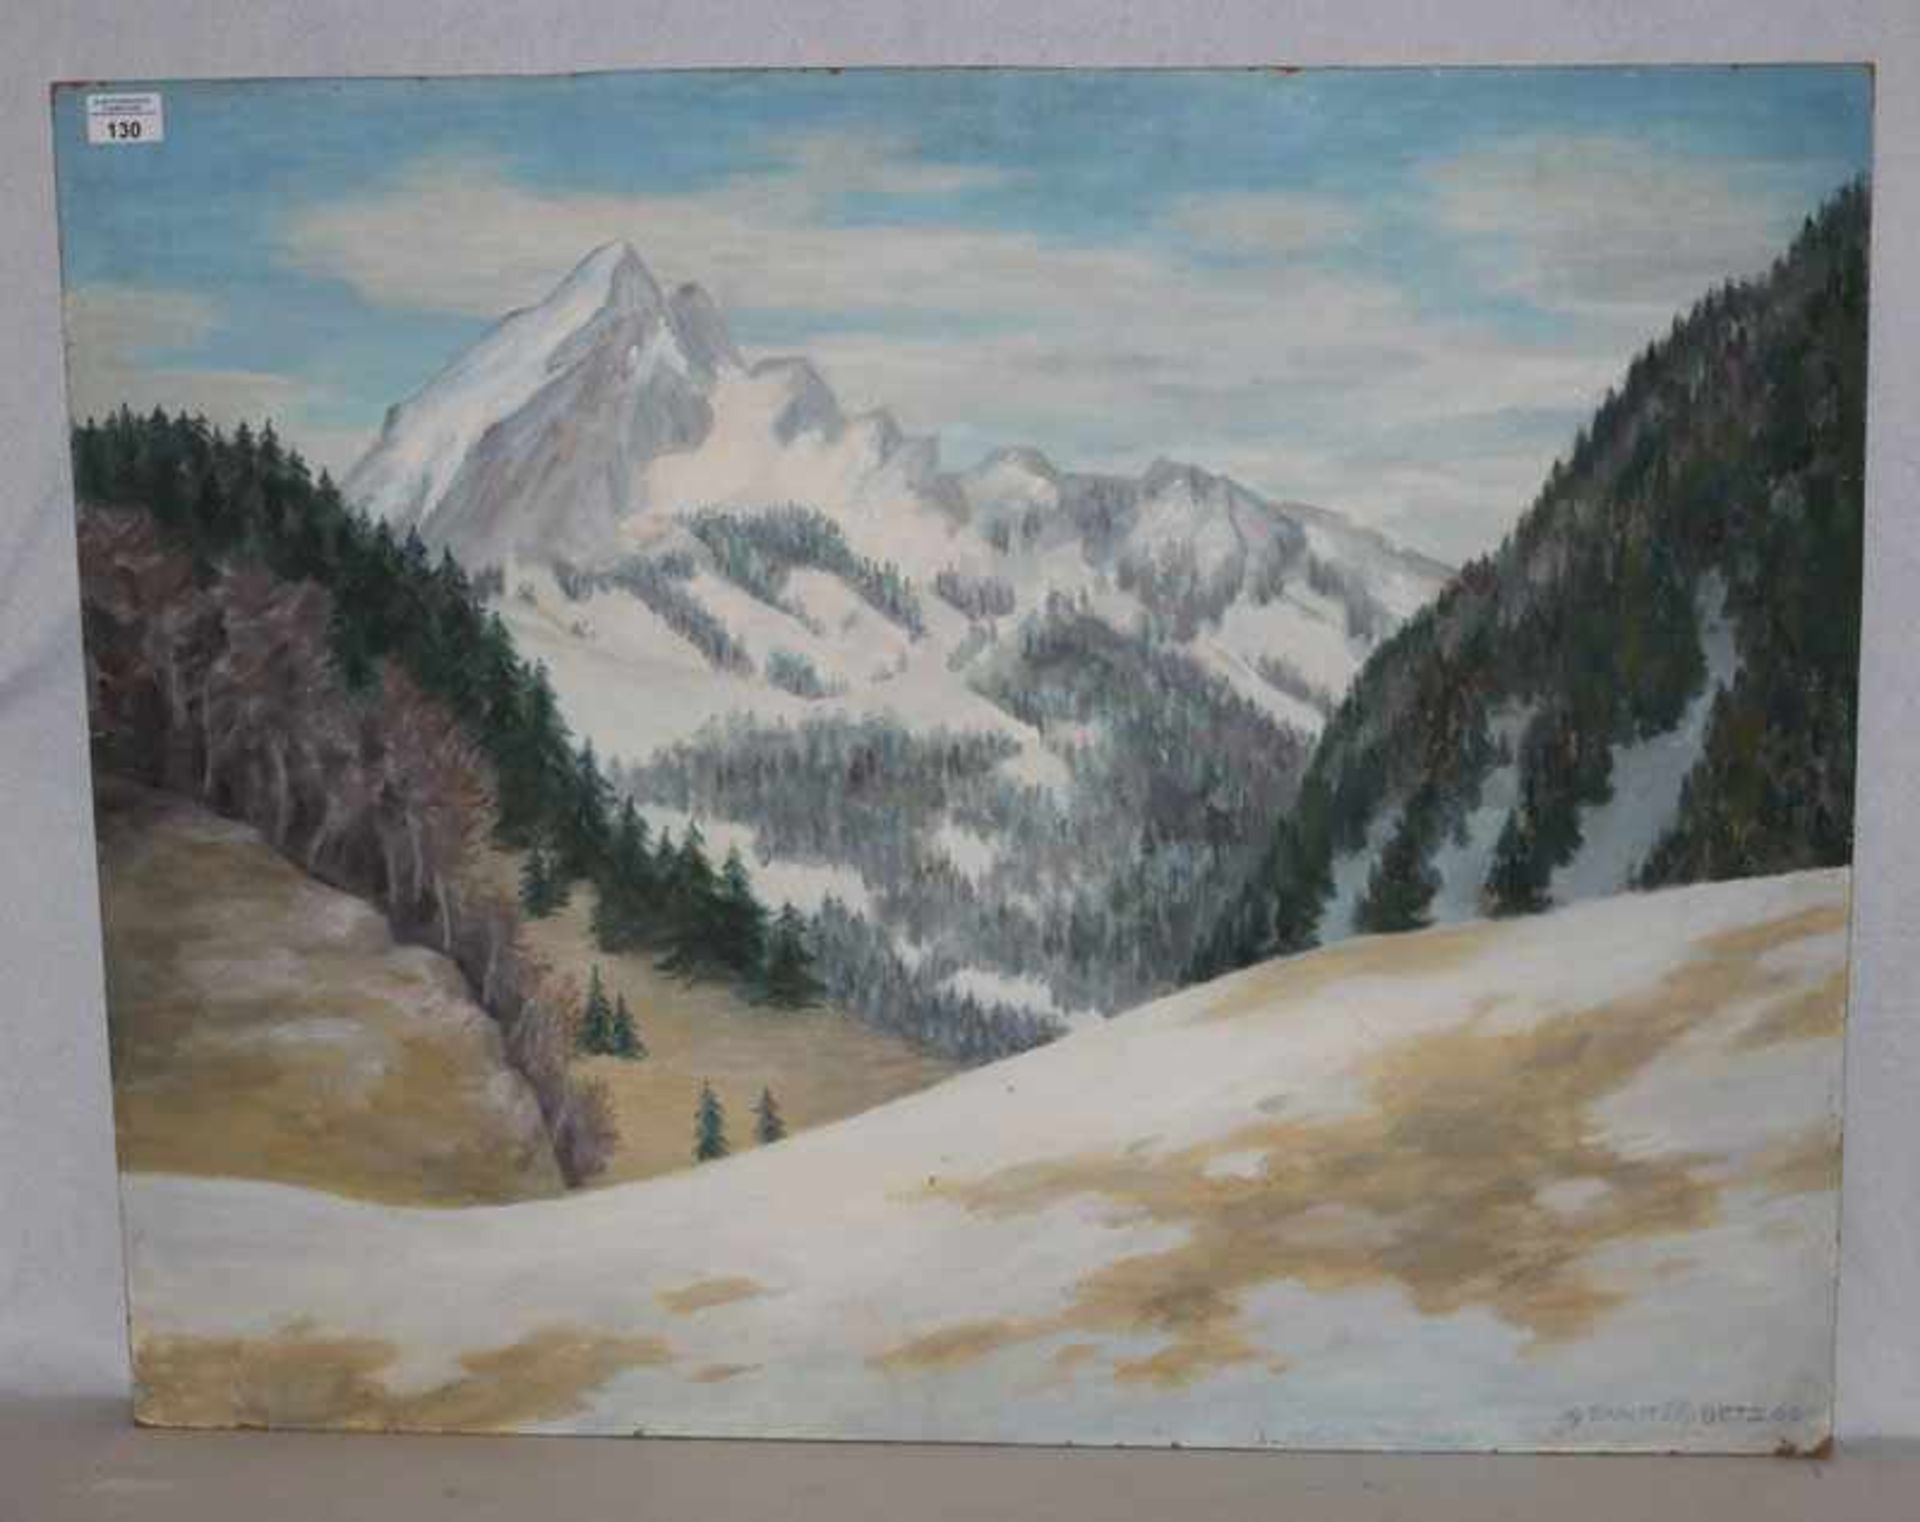 Gemälde ÖL/Hartfaser 'Wendelstein im Winter', signiert Ernst Betz, datiert 1966, rückseitig